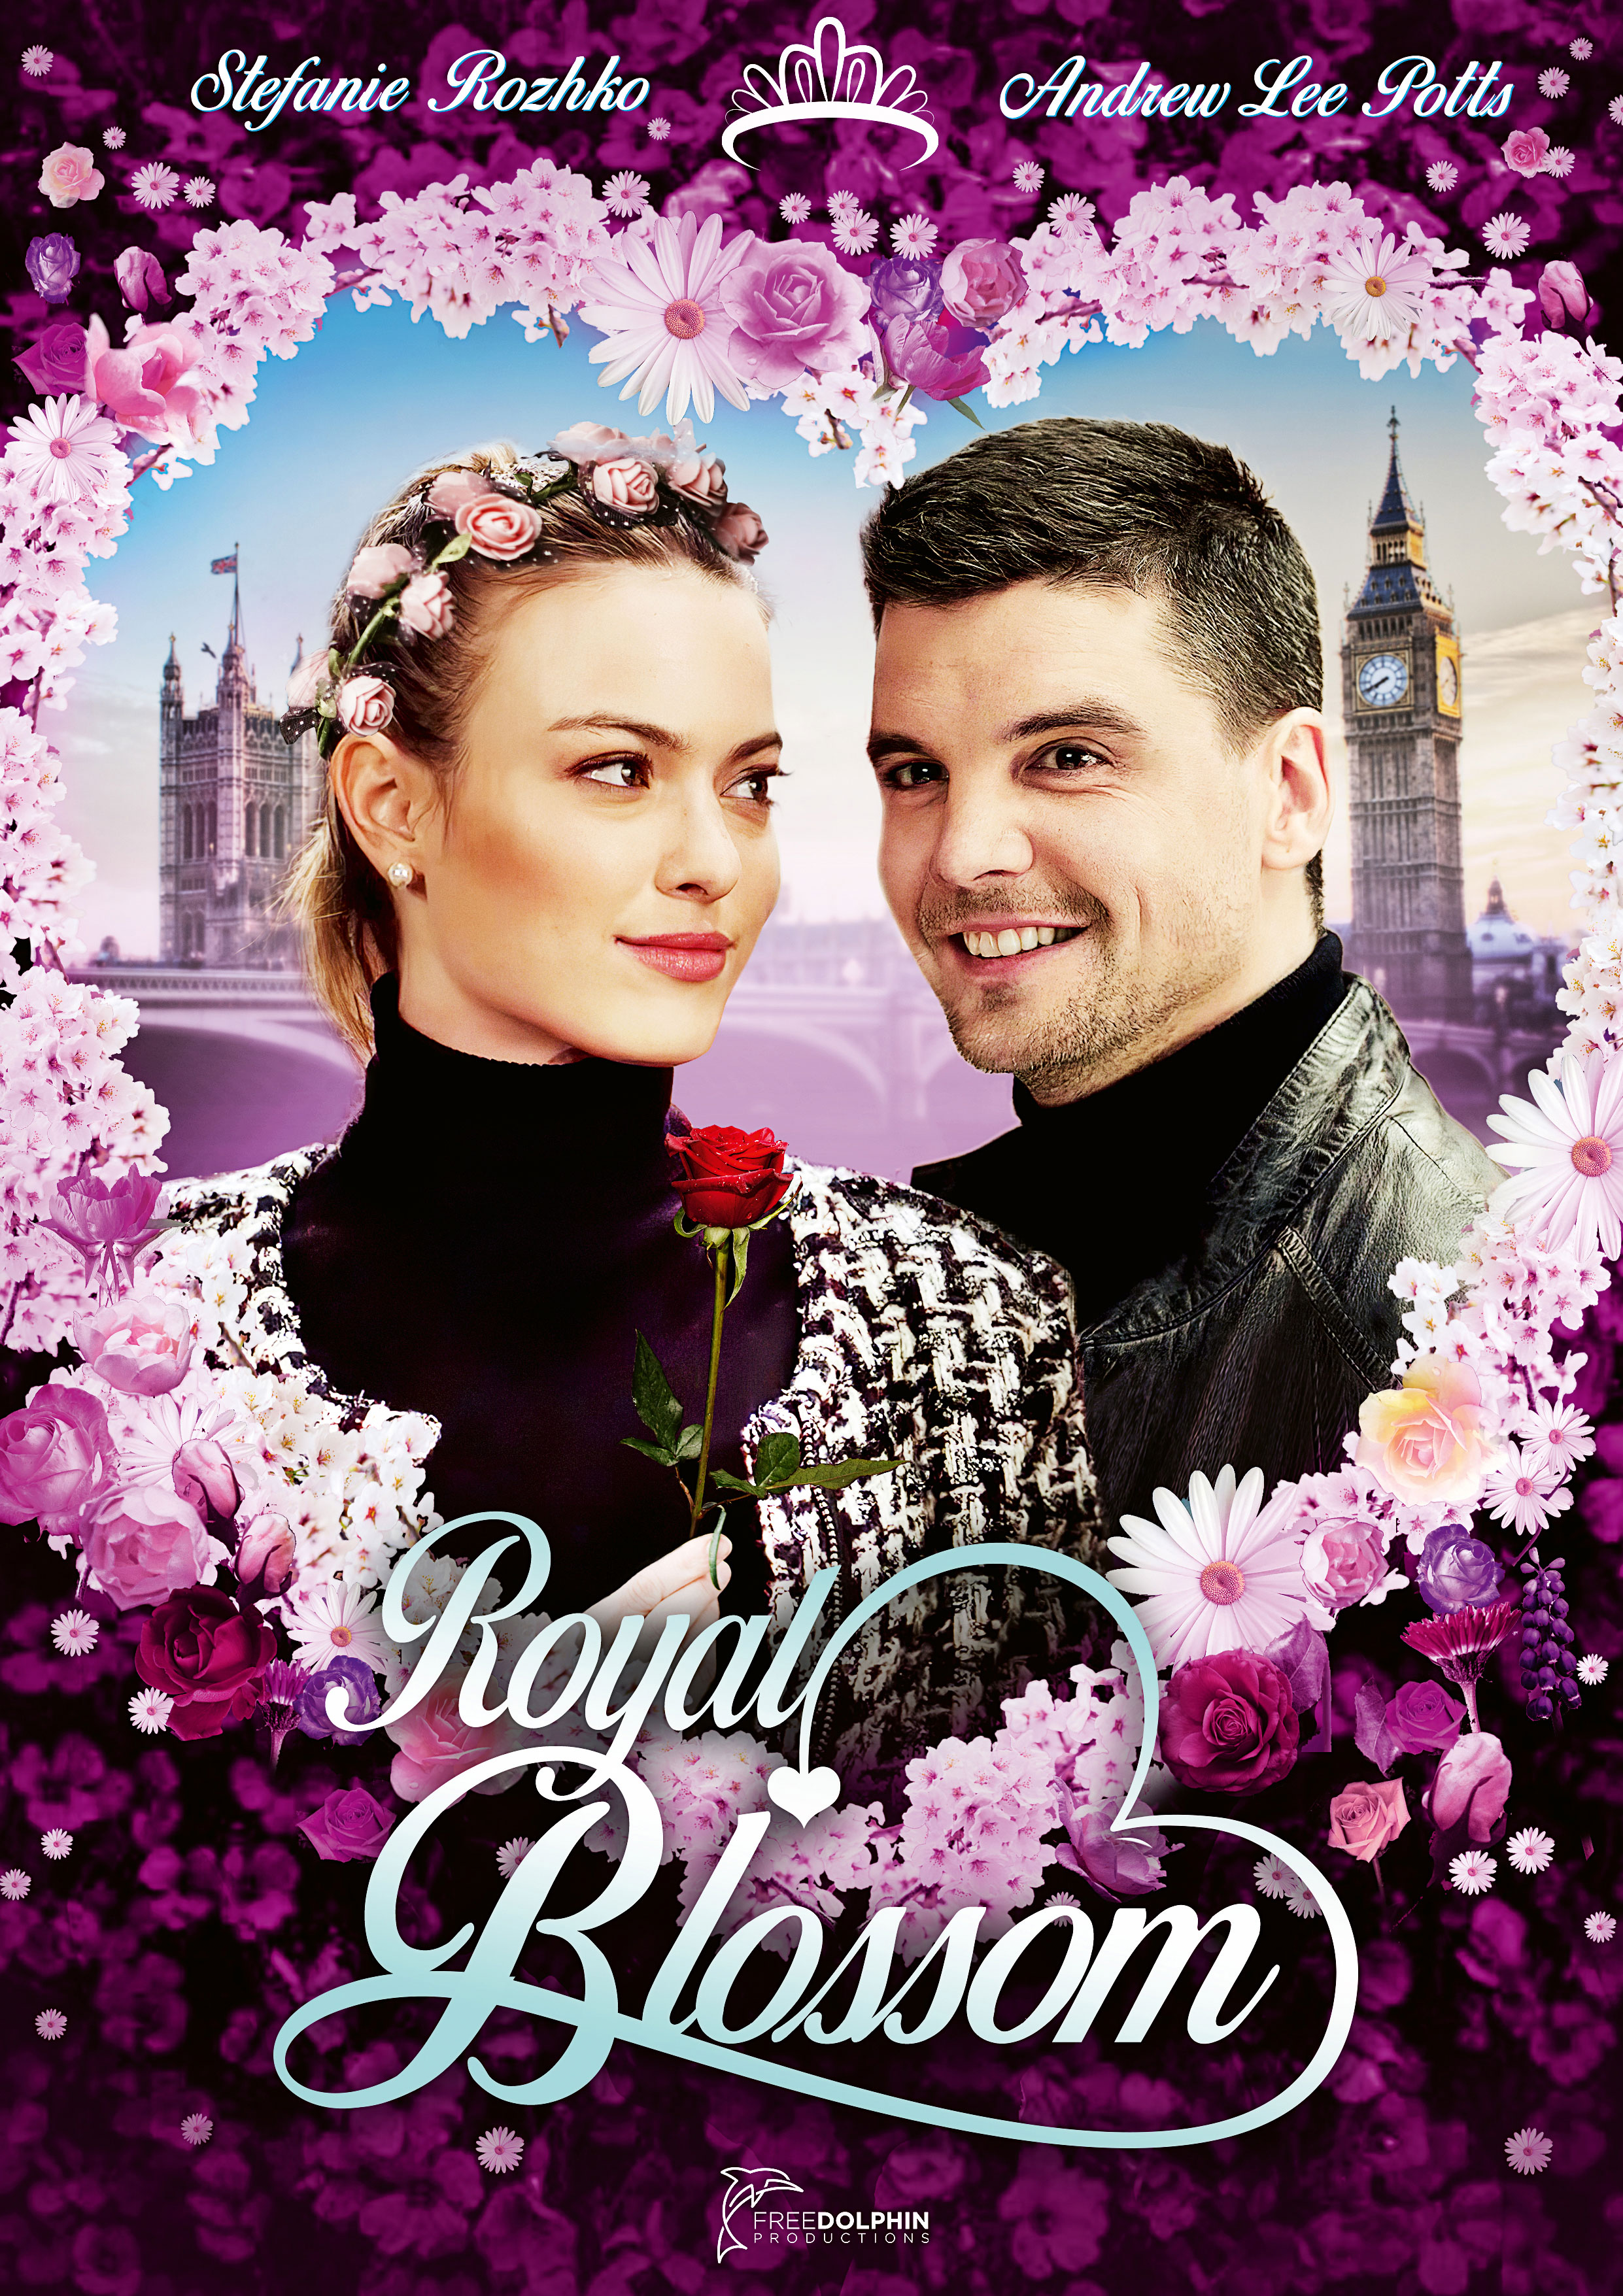 Royal Blossom (2021)